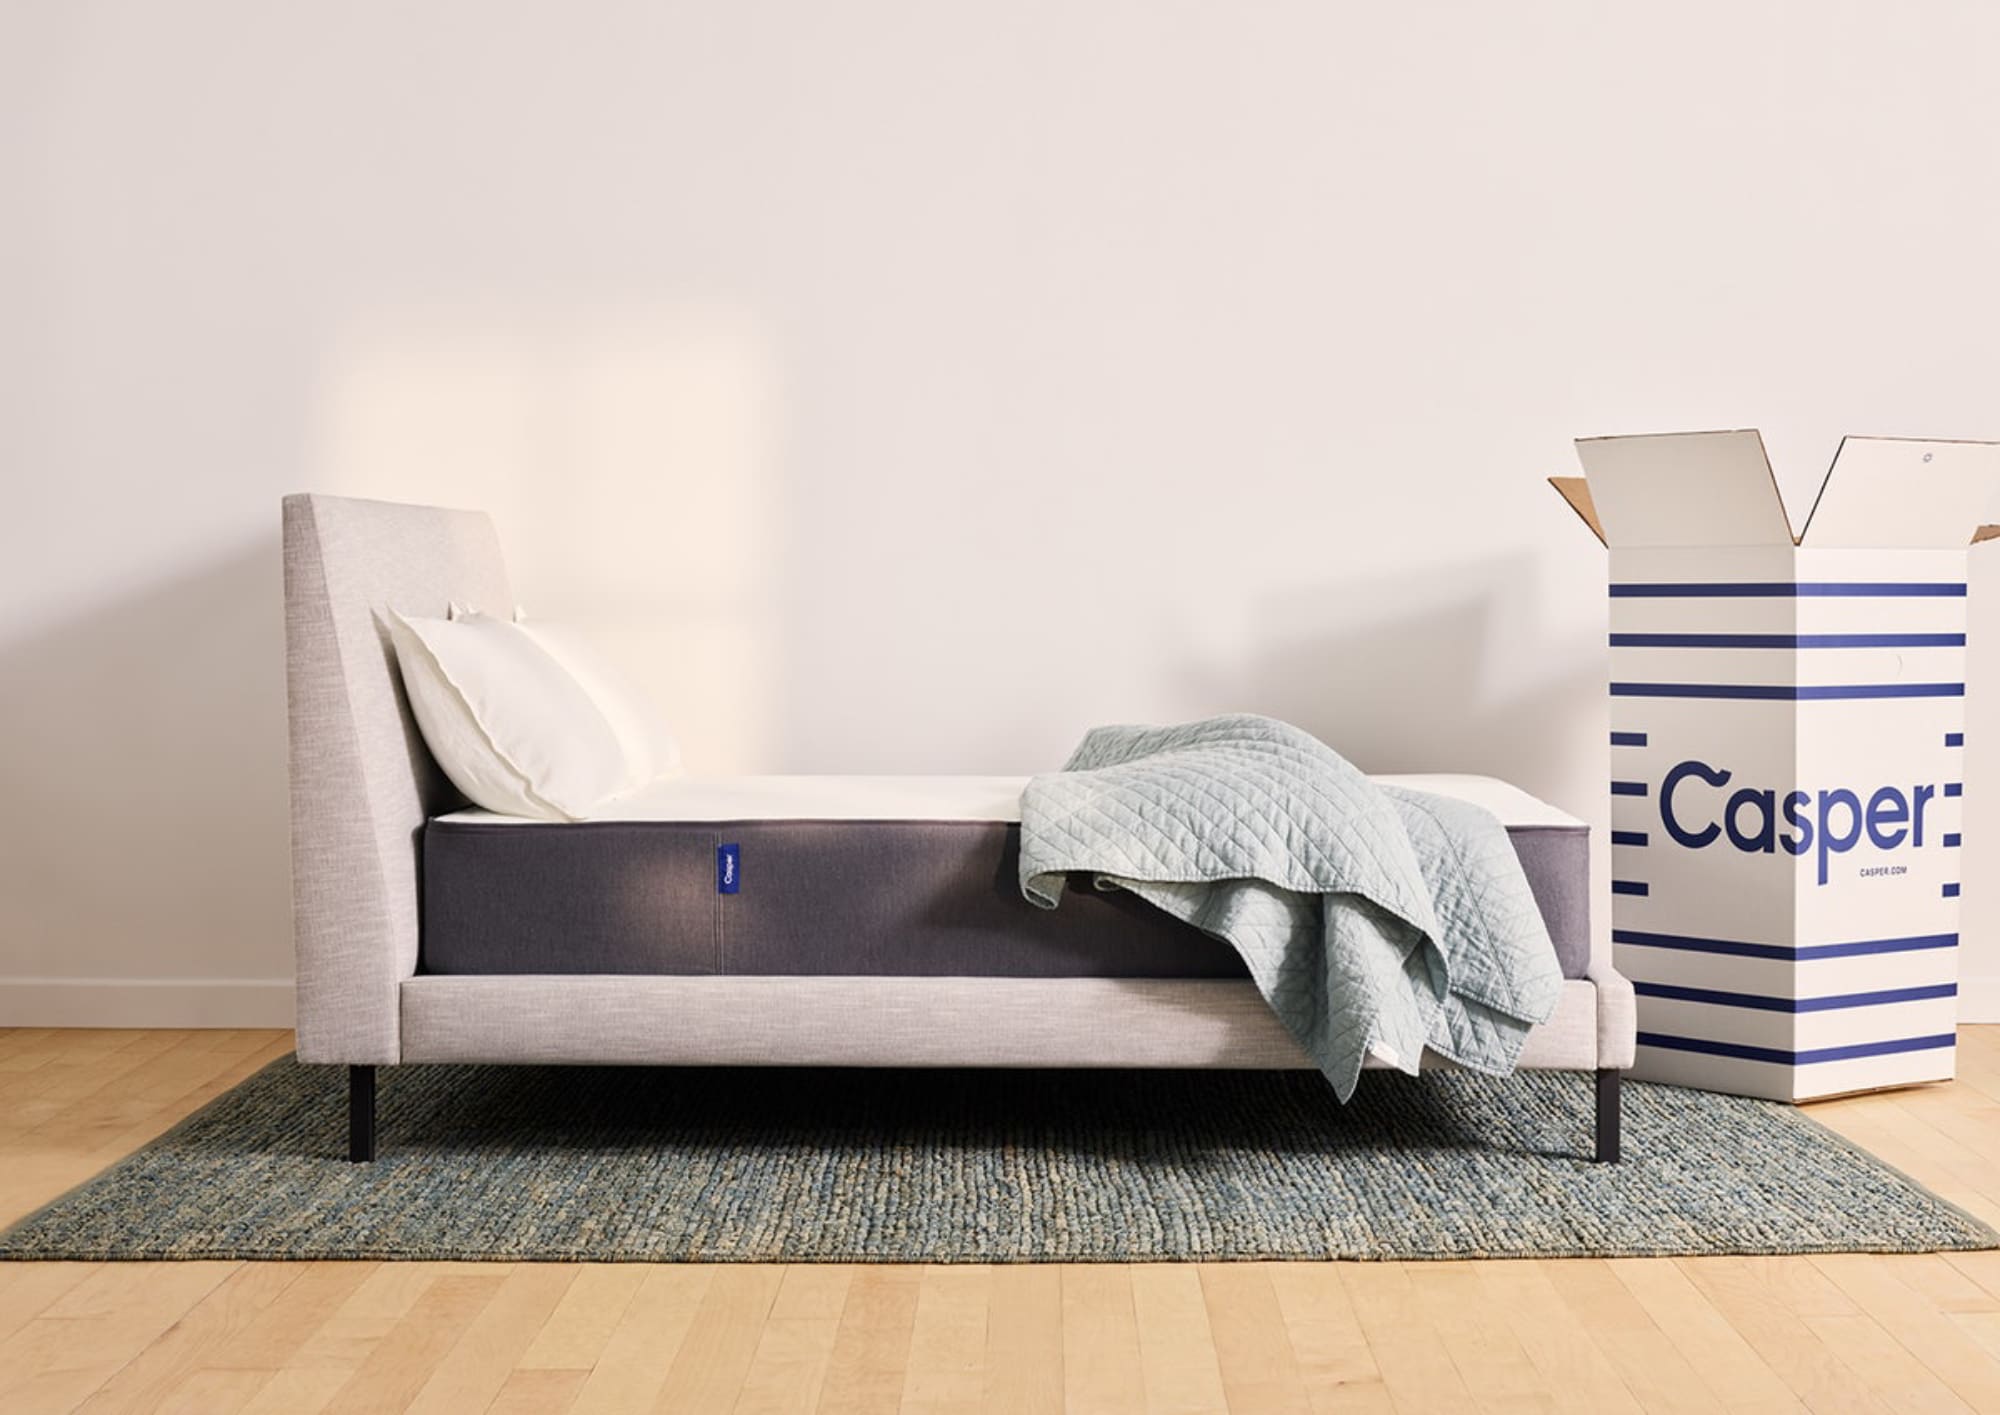 Casper bed-in-a-box mattress